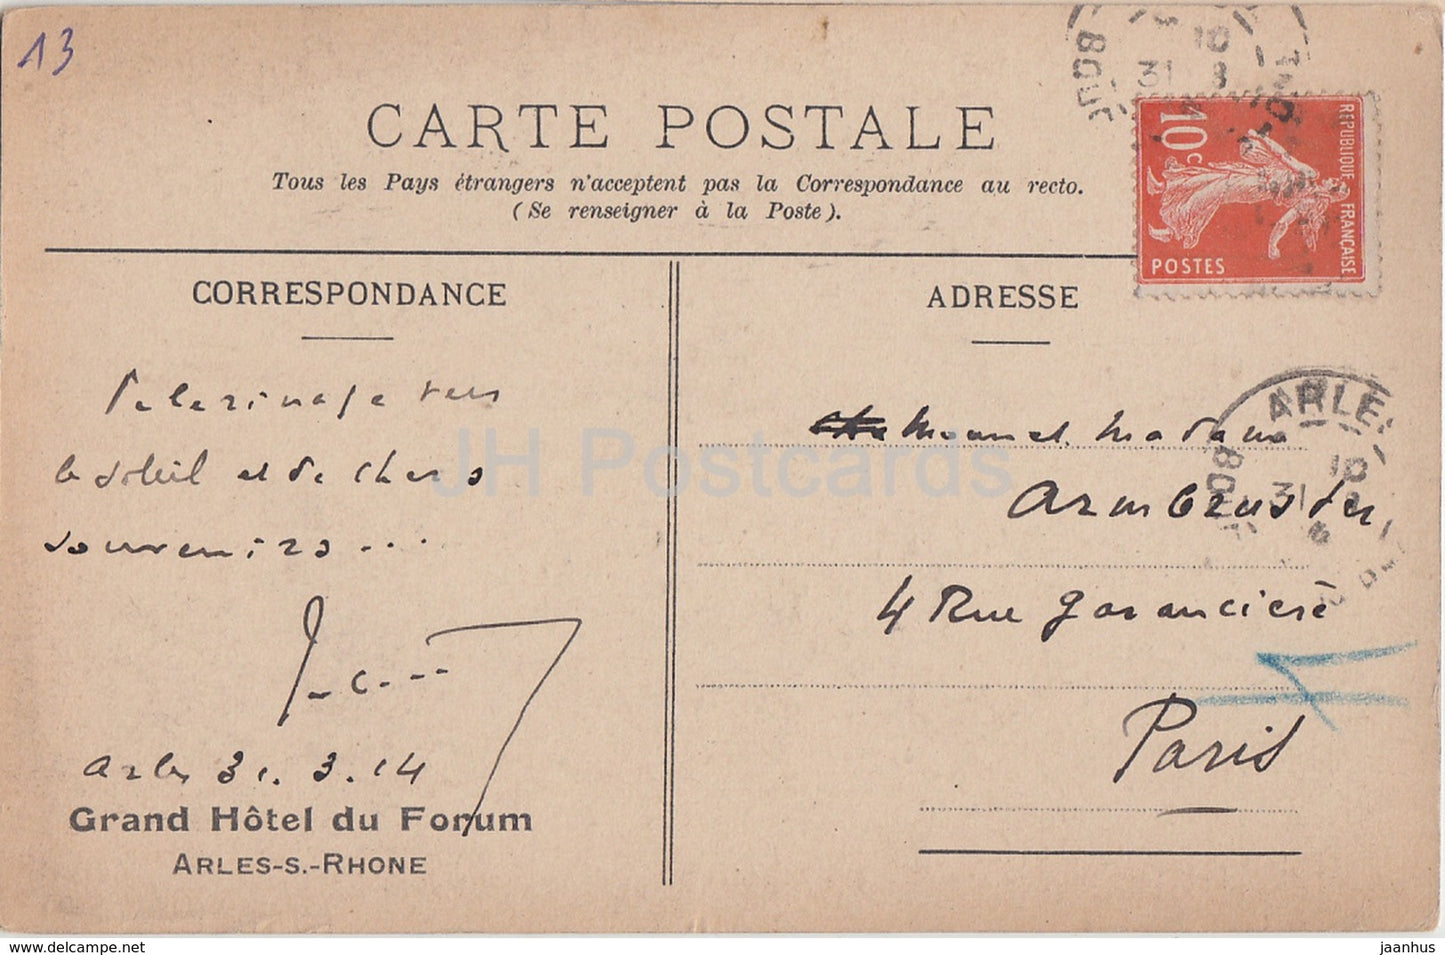 Arles - Le Portail de Saint Trophime - Grand Hôtel du Forum - cloître - carte postale ancienne - 1914 - France - occasion